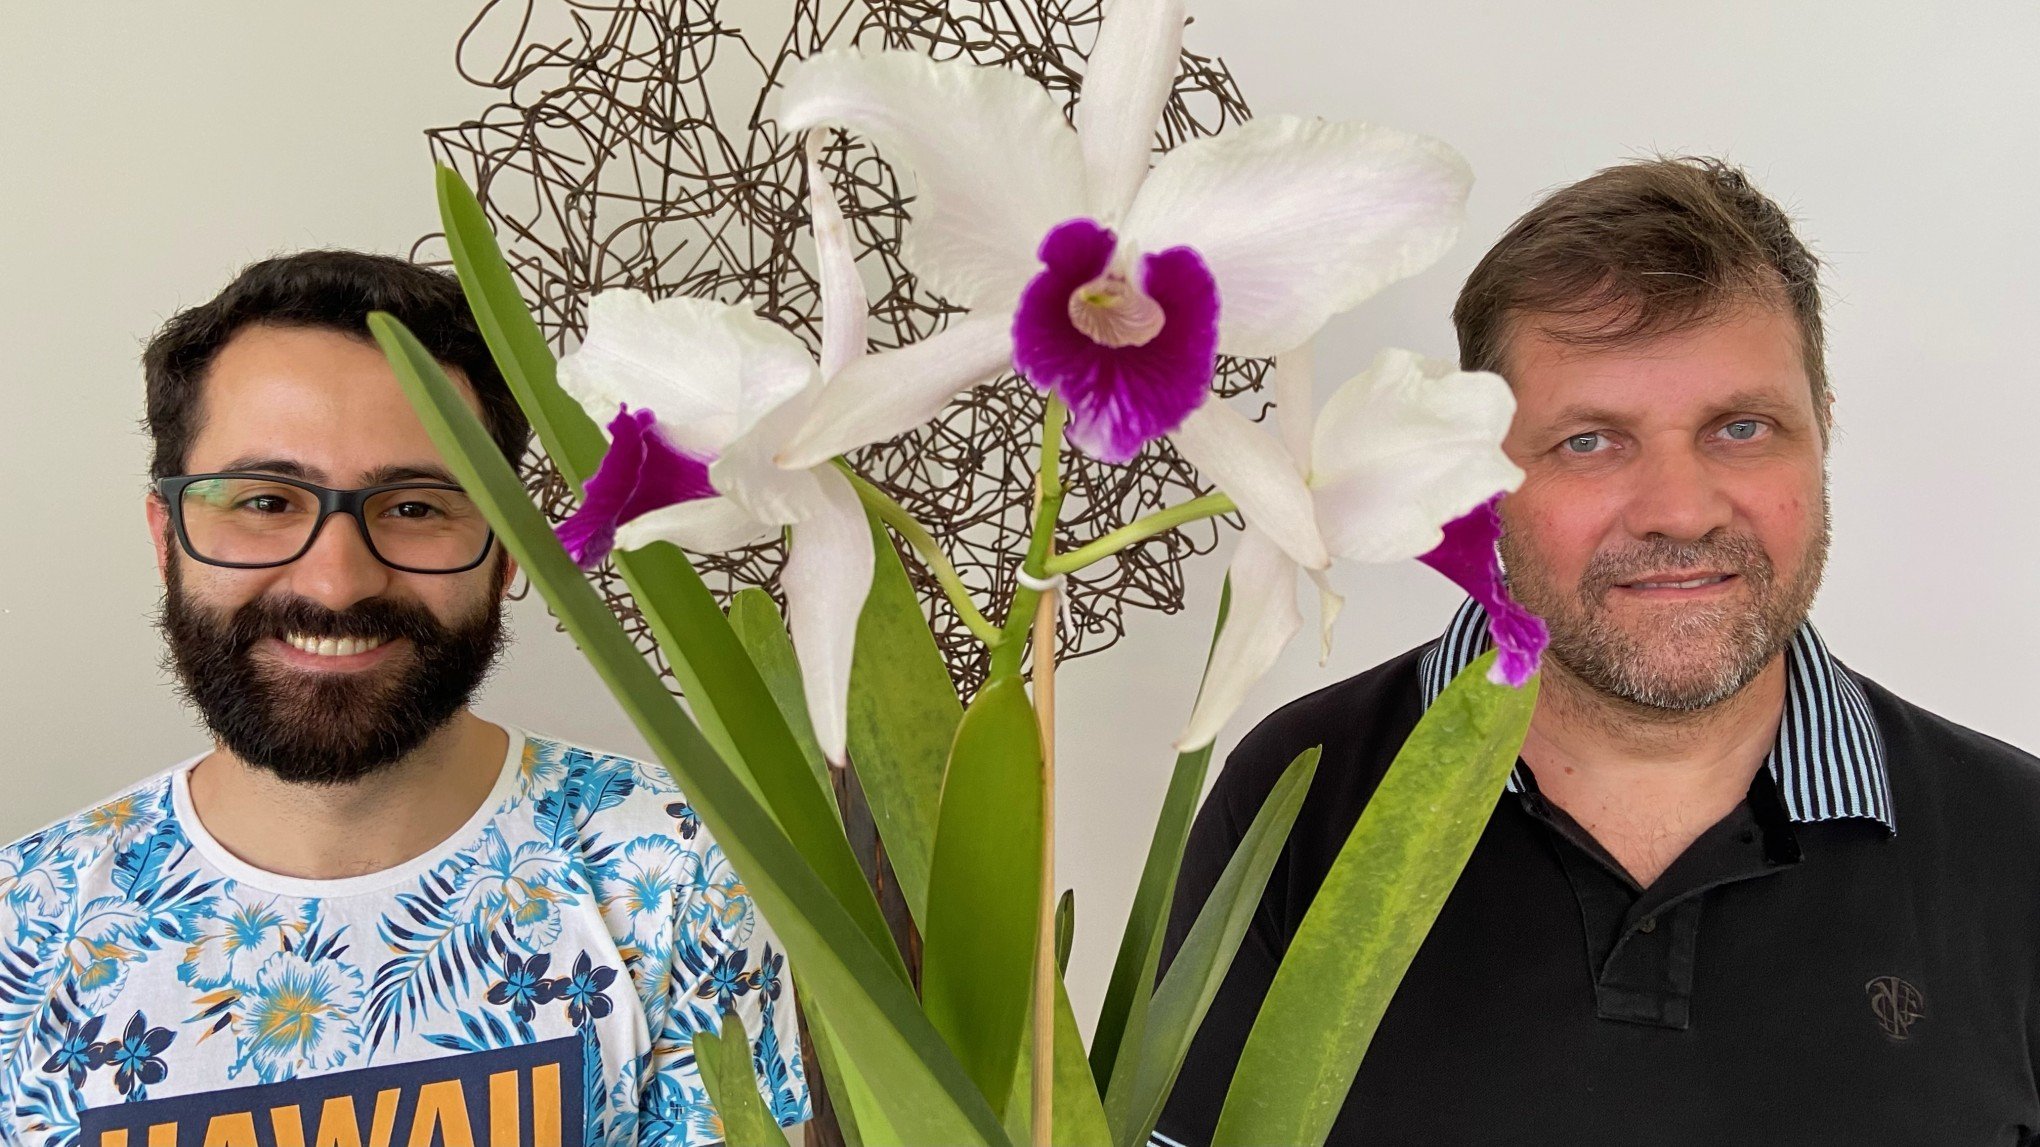 Mostra de Orquídeas terá cerca de 200 plantas expostas em Novo Hamburgo -  Novo Hamburgo - Jornal VS